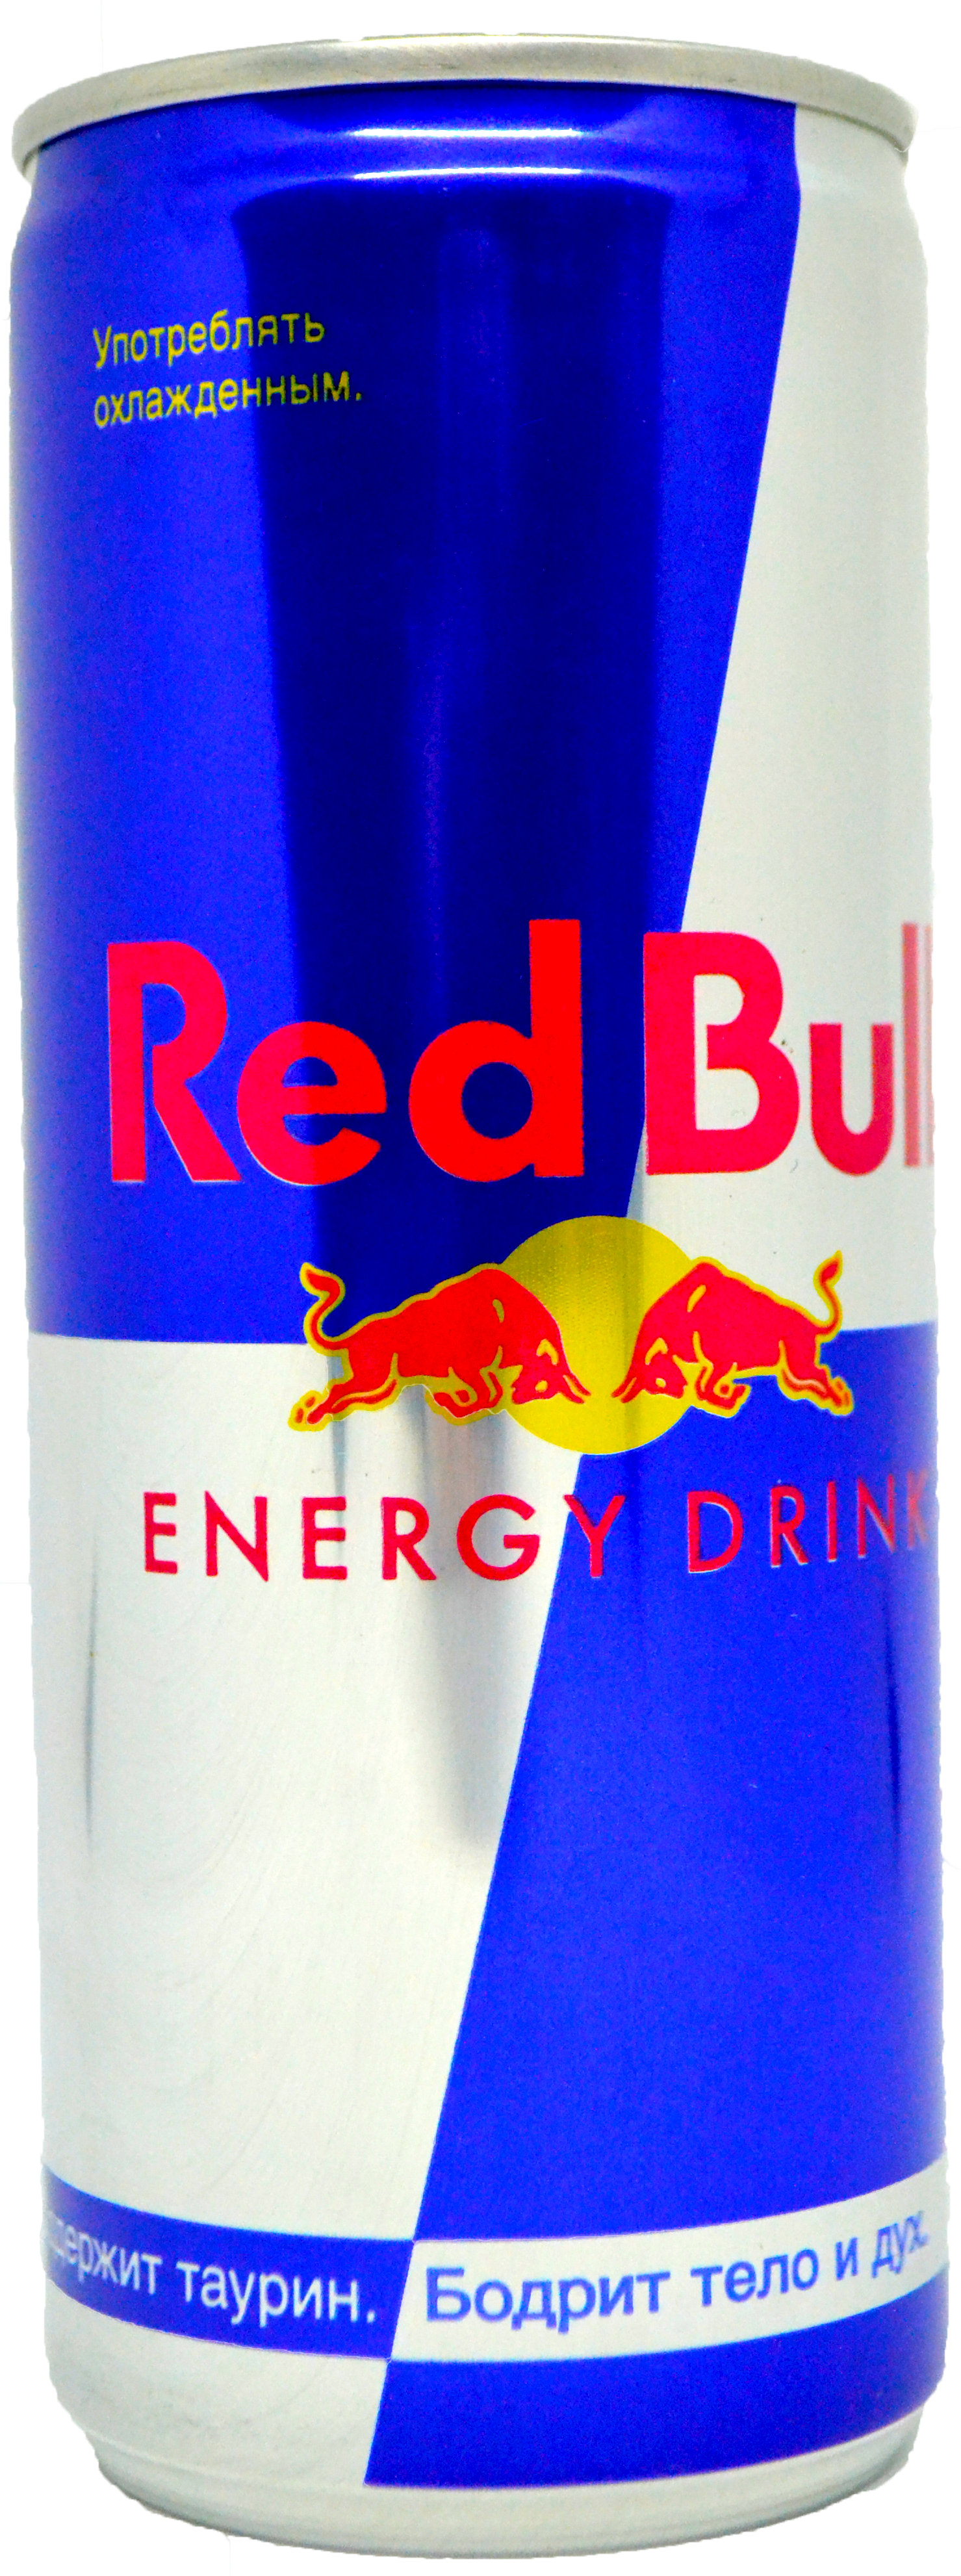  Red Bull (Ред Булл) газ 0,2 ж/б Австрия от компании Нортэна